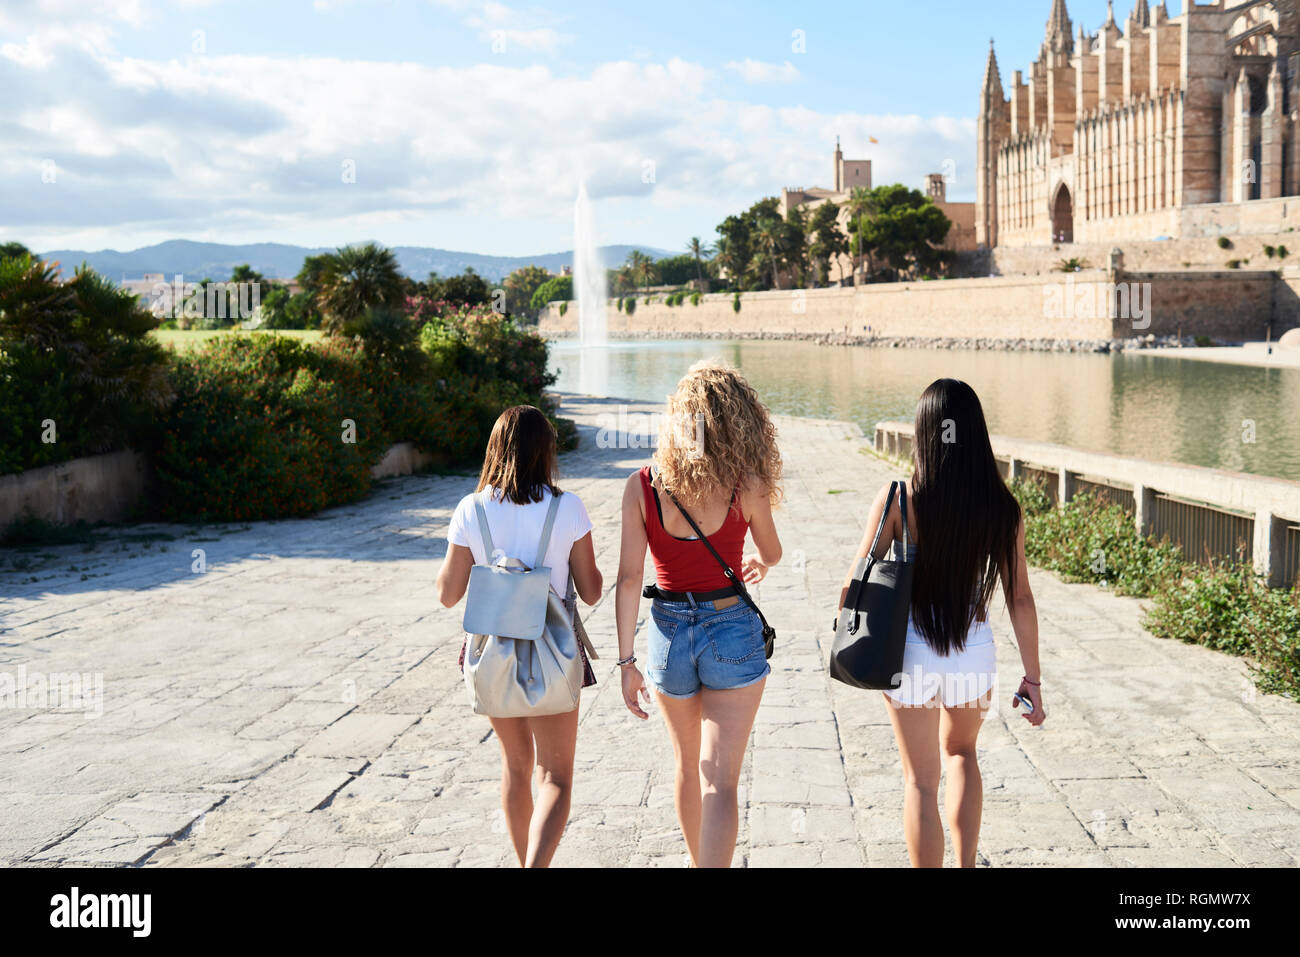 Spanien, Mallorca, Palma, Rückansicht von drei jungen Frauen in der Stadt zu erkunden Stockfoto